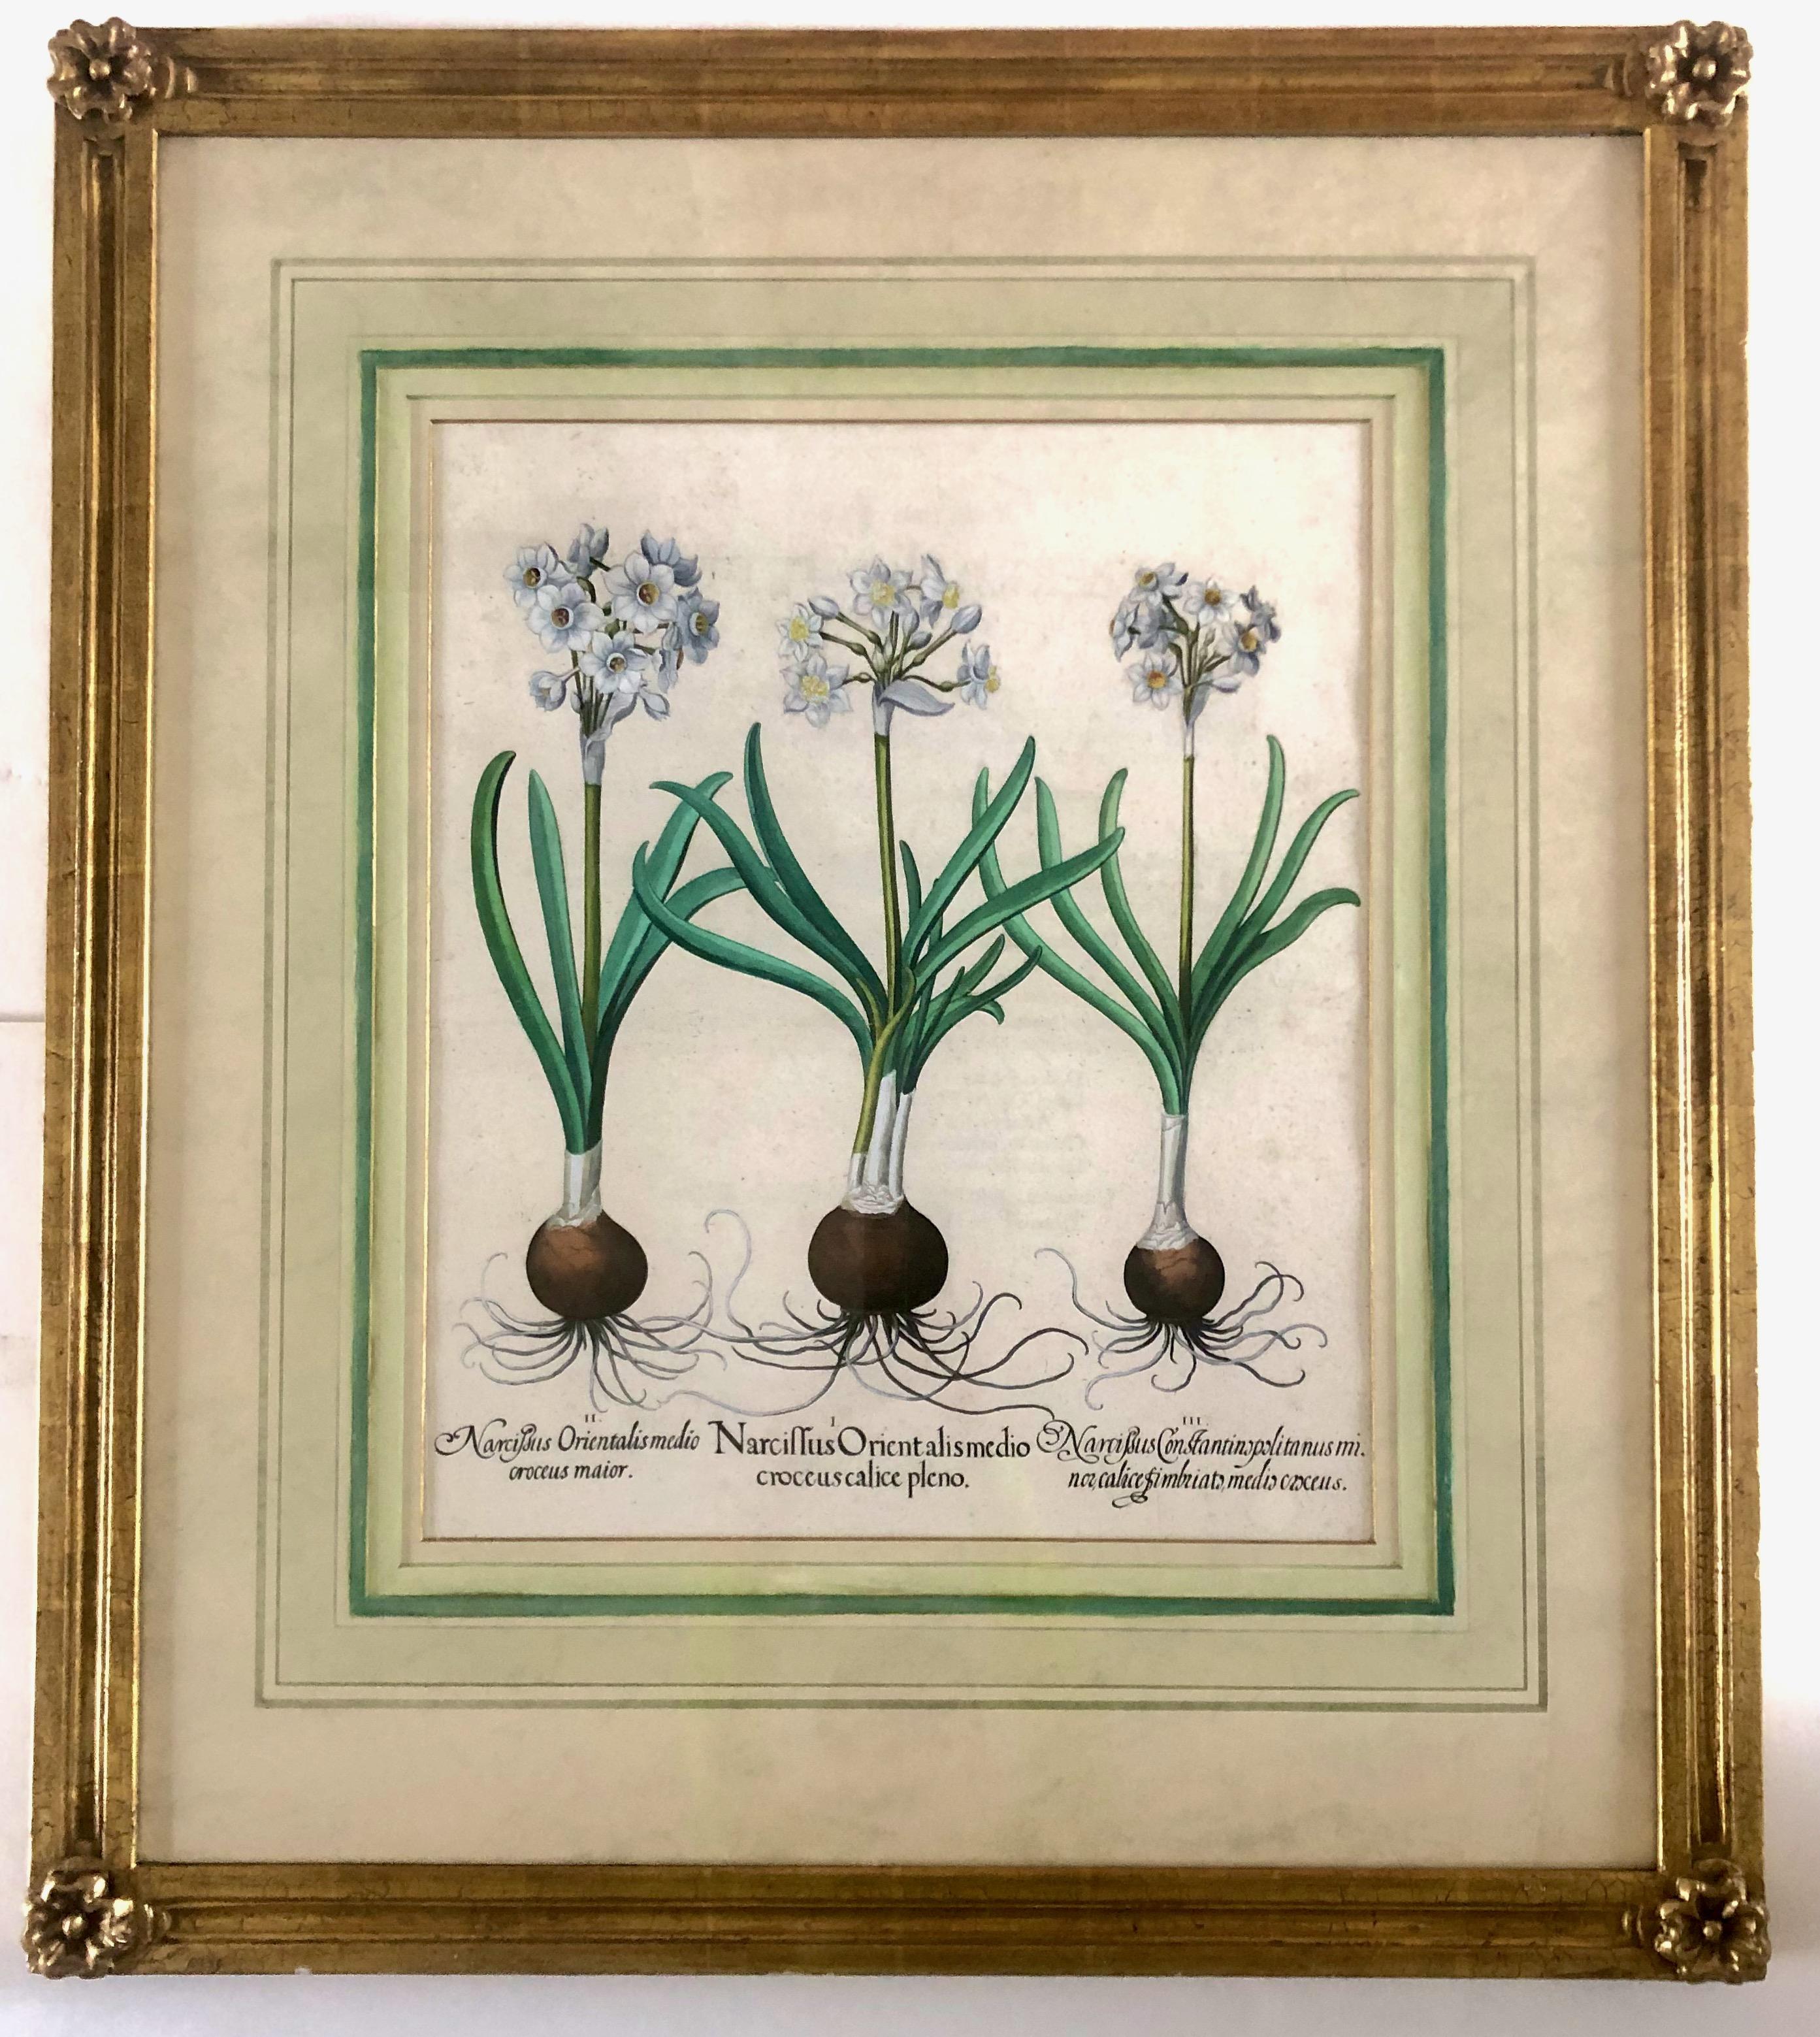 Basilius Besler Narcissus Orientalis Medio Croceus Calice Pleno
Gravure colorée à la main 21.5 "x17.5"
Une belle gravure sur cuivre publiée dans le célèbre grand livre de fleurs, Hortus Eystettensis à Altdorf et Nurnberg, d'abord vers 1613. L'Hortus